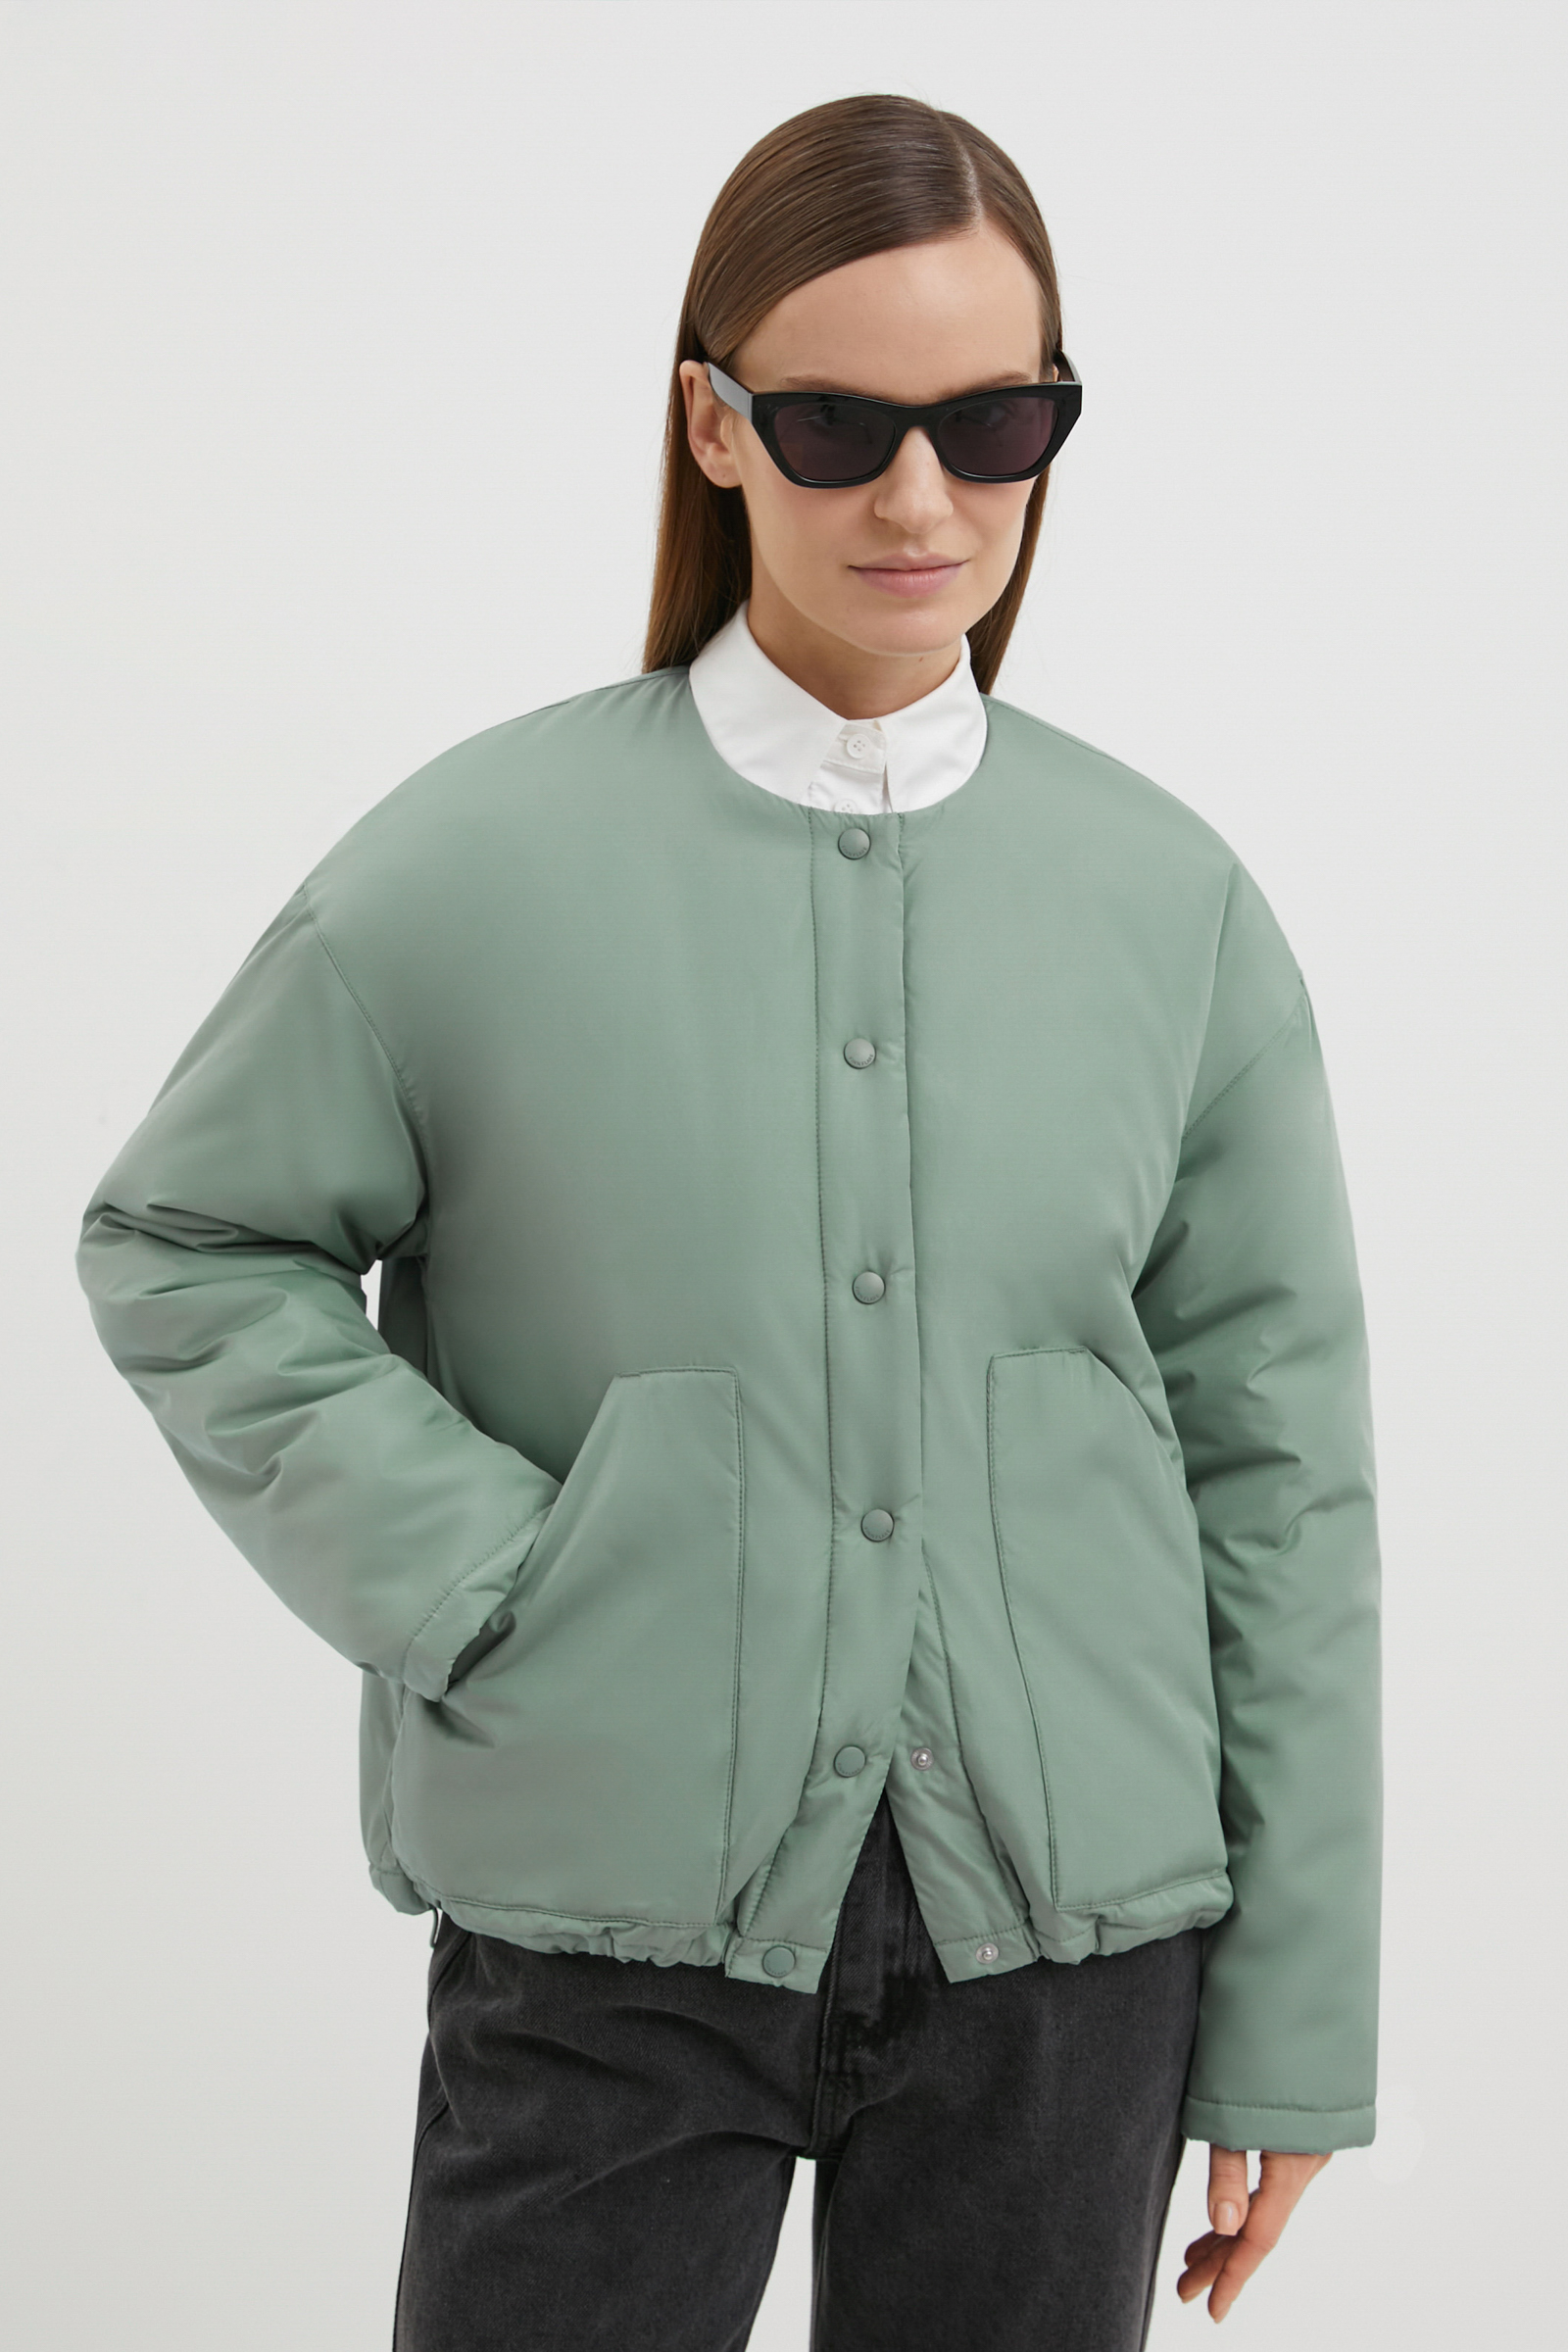 Куртка женская Finn Flare FBE11086 зеленая XL